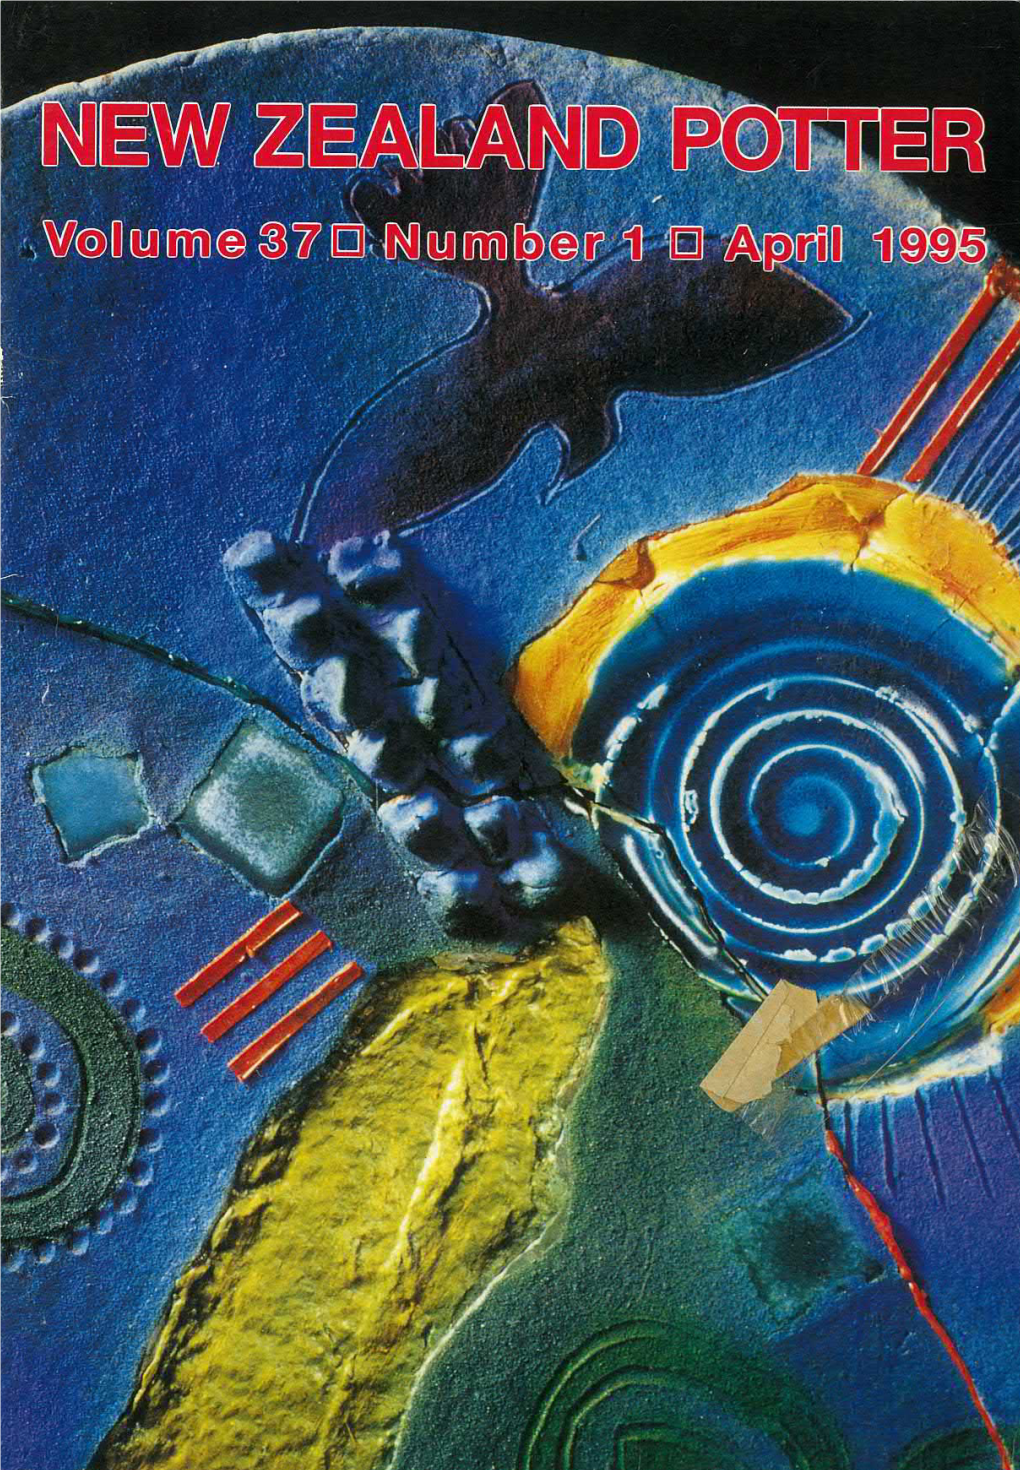 New Zealand Potter Volume 37 Number 1 April 1995